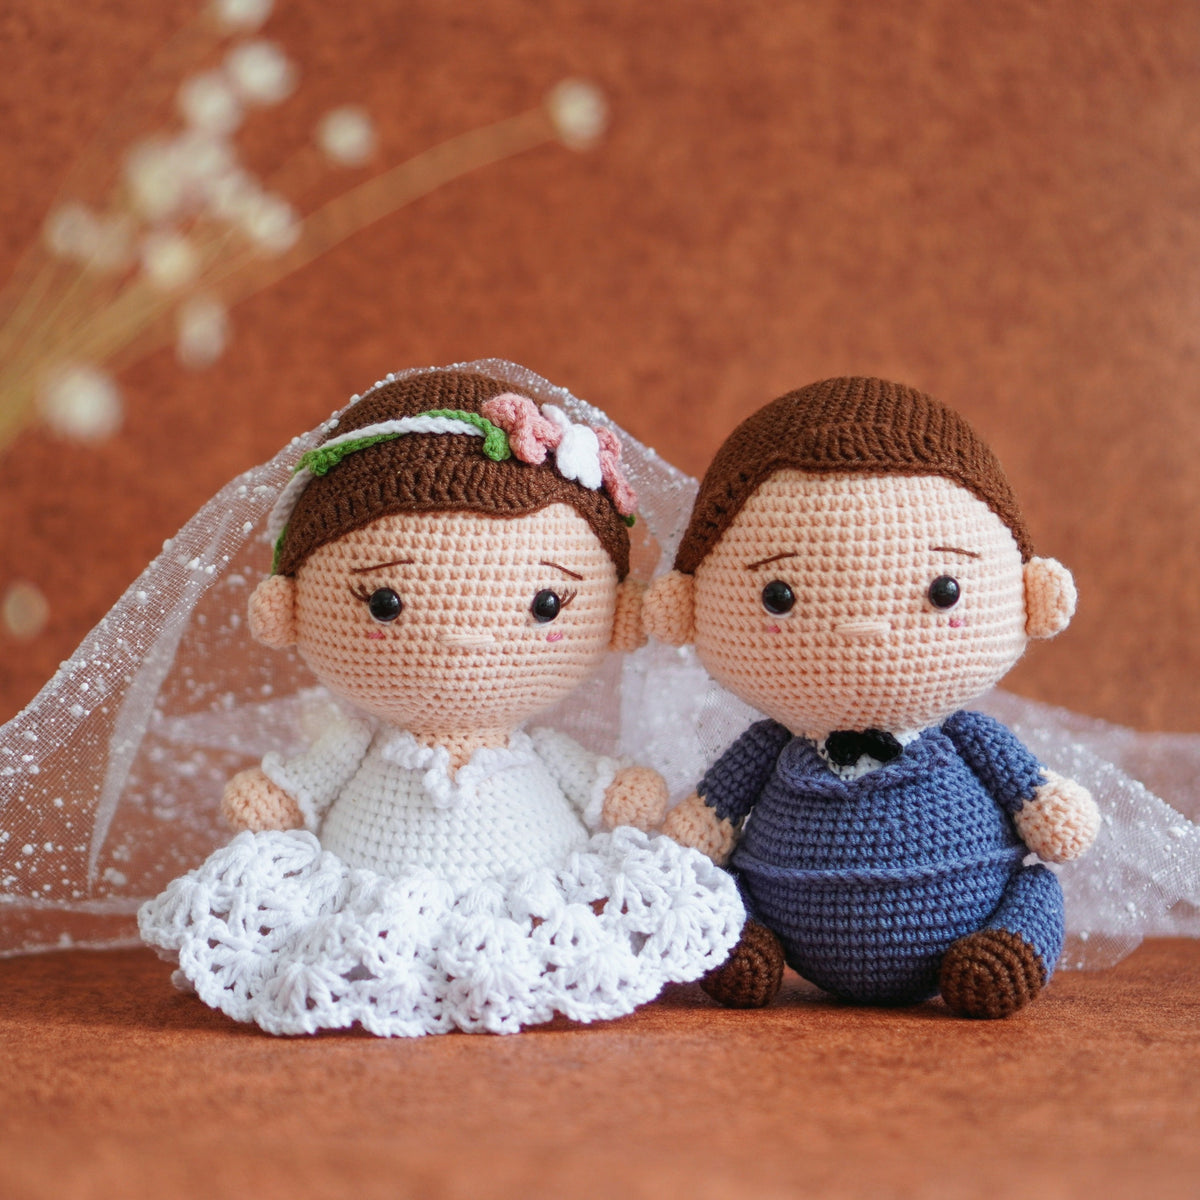 Wedding Couple Crochet Pattern by Aquariwool Crochet (Crochet Doll